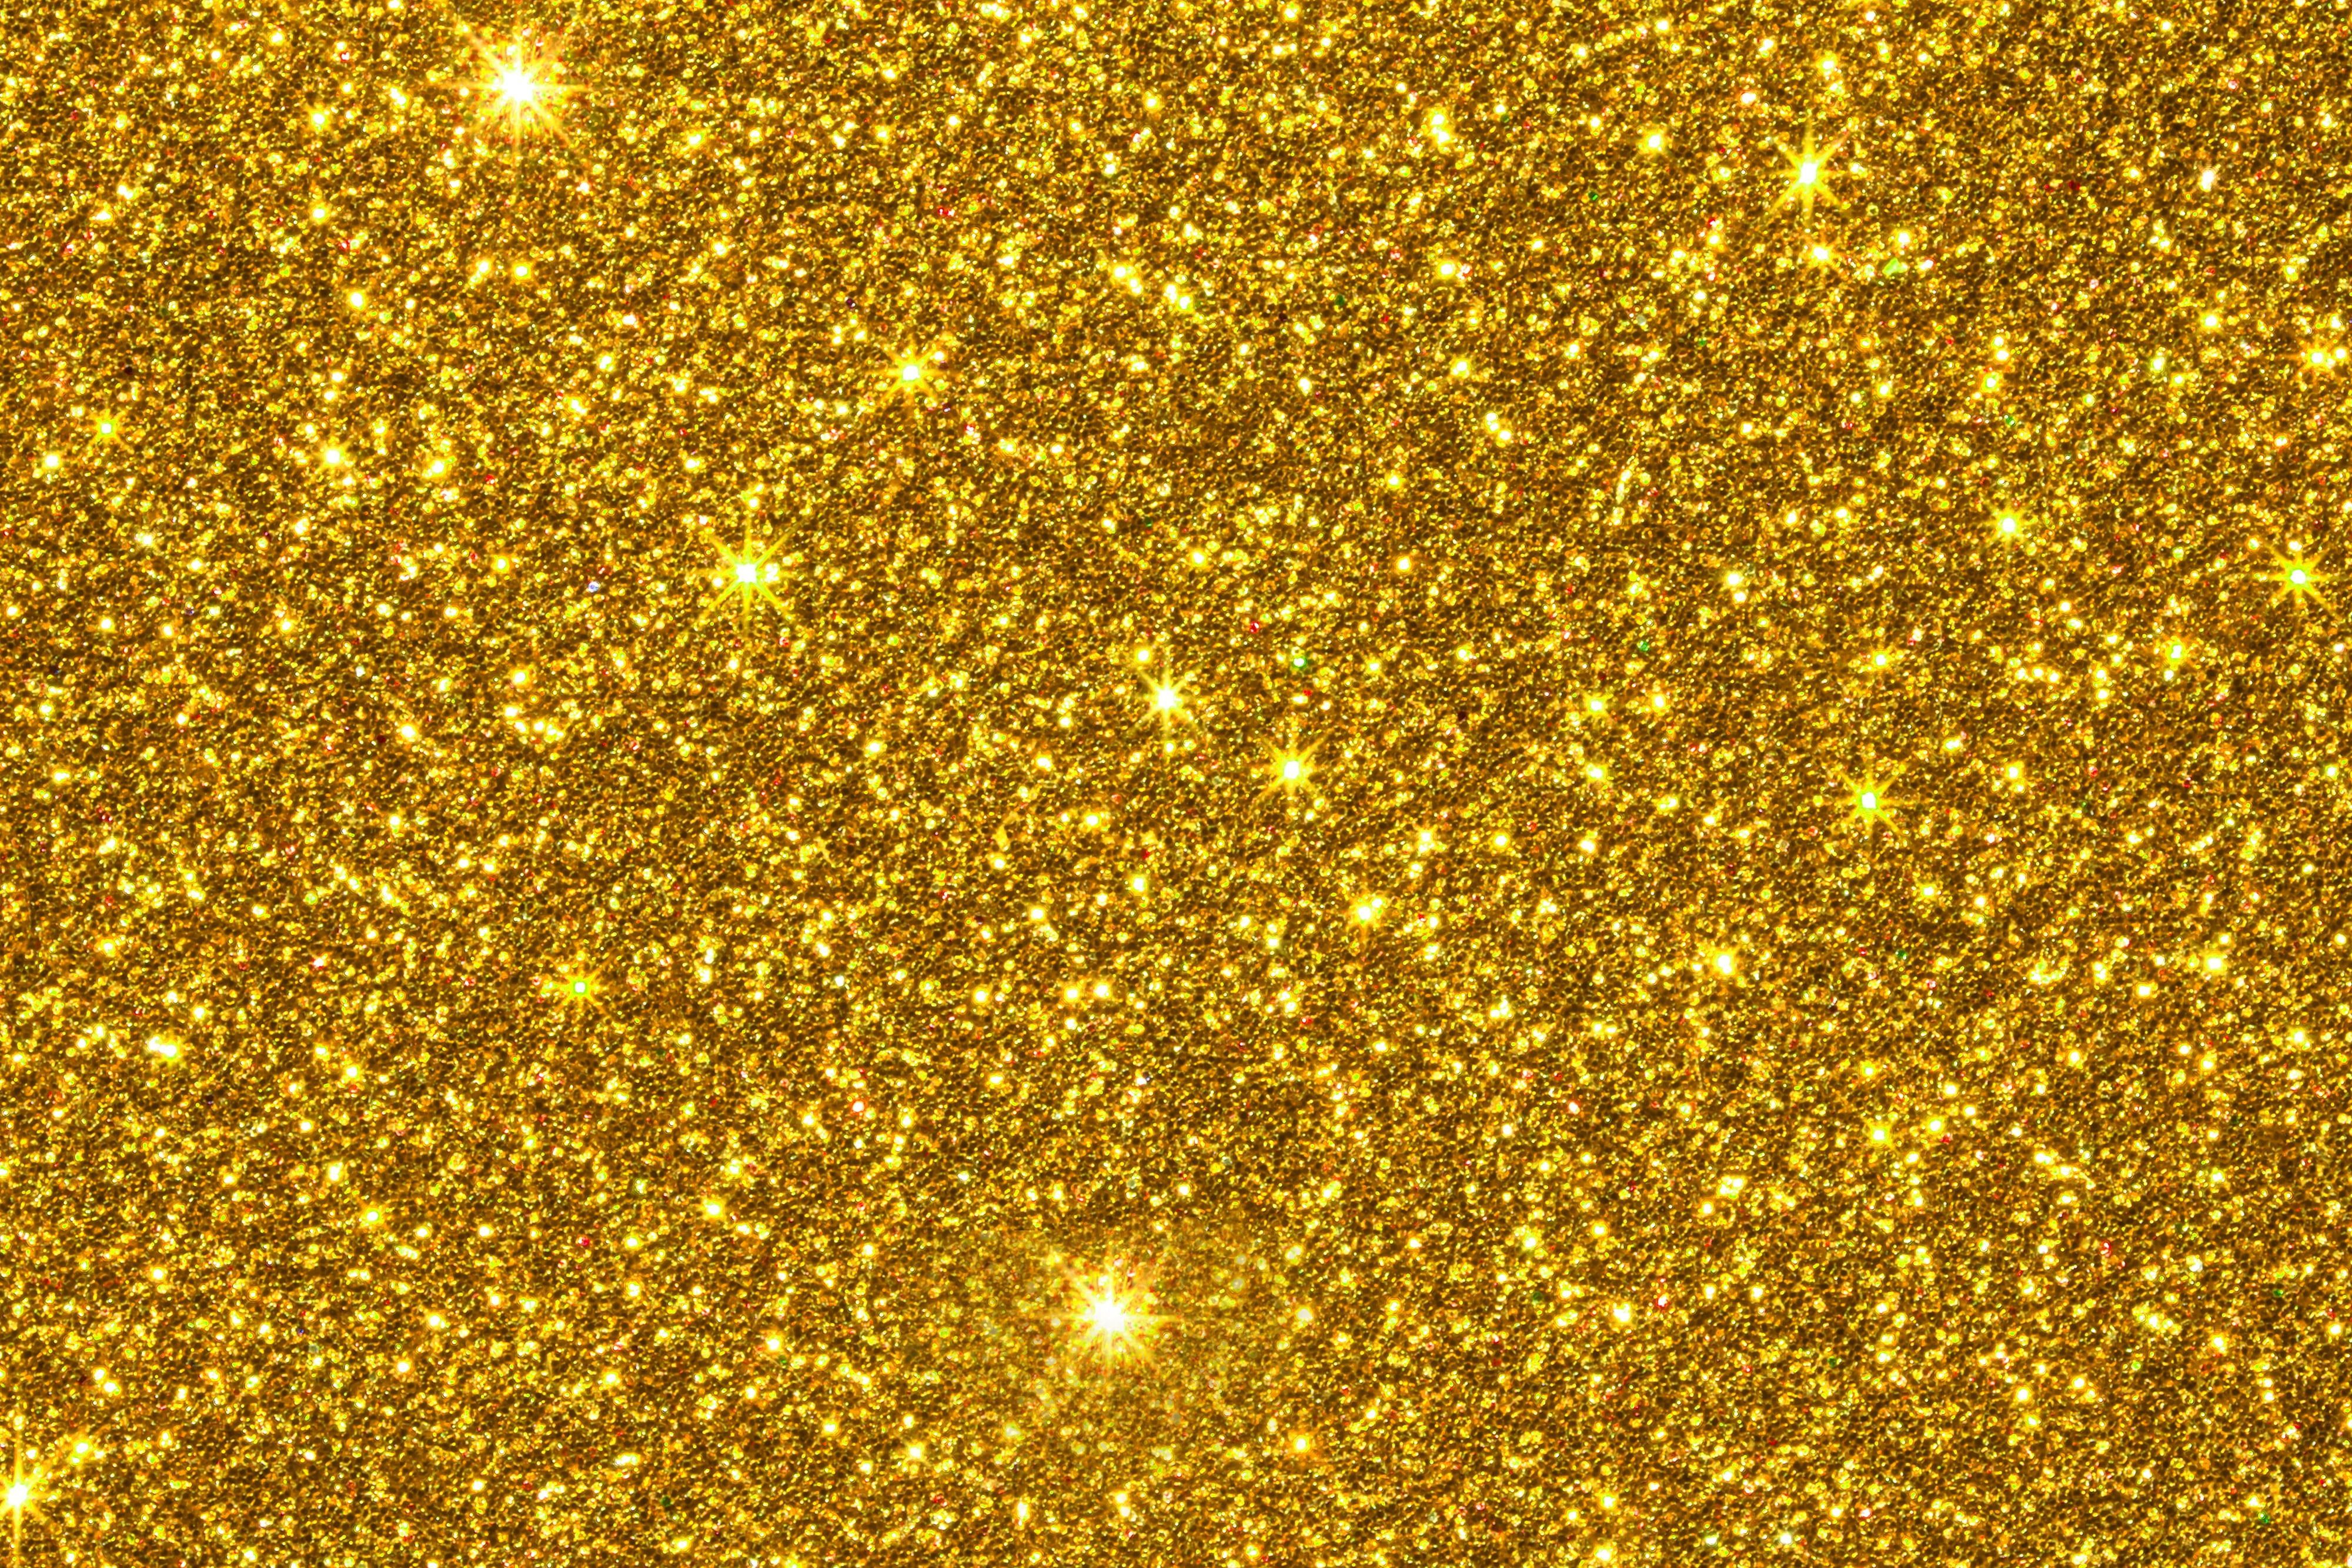 background #sequins #golden #gold #texture #shine #glitter K #wallpaper #hdwallpaper #desktop. Gold texture background, Backdrops background, Glitter